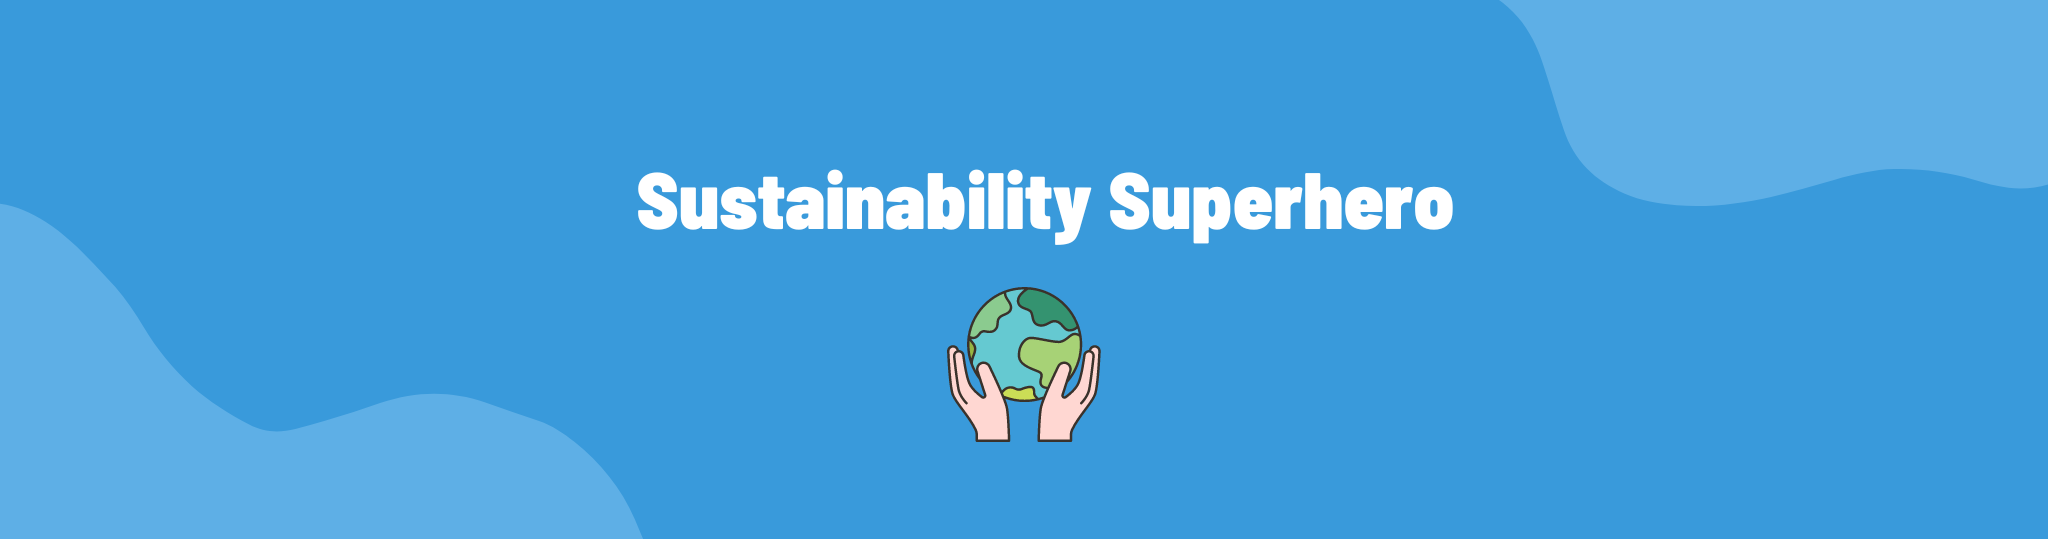 Sustainability Superhero: jannik luyten